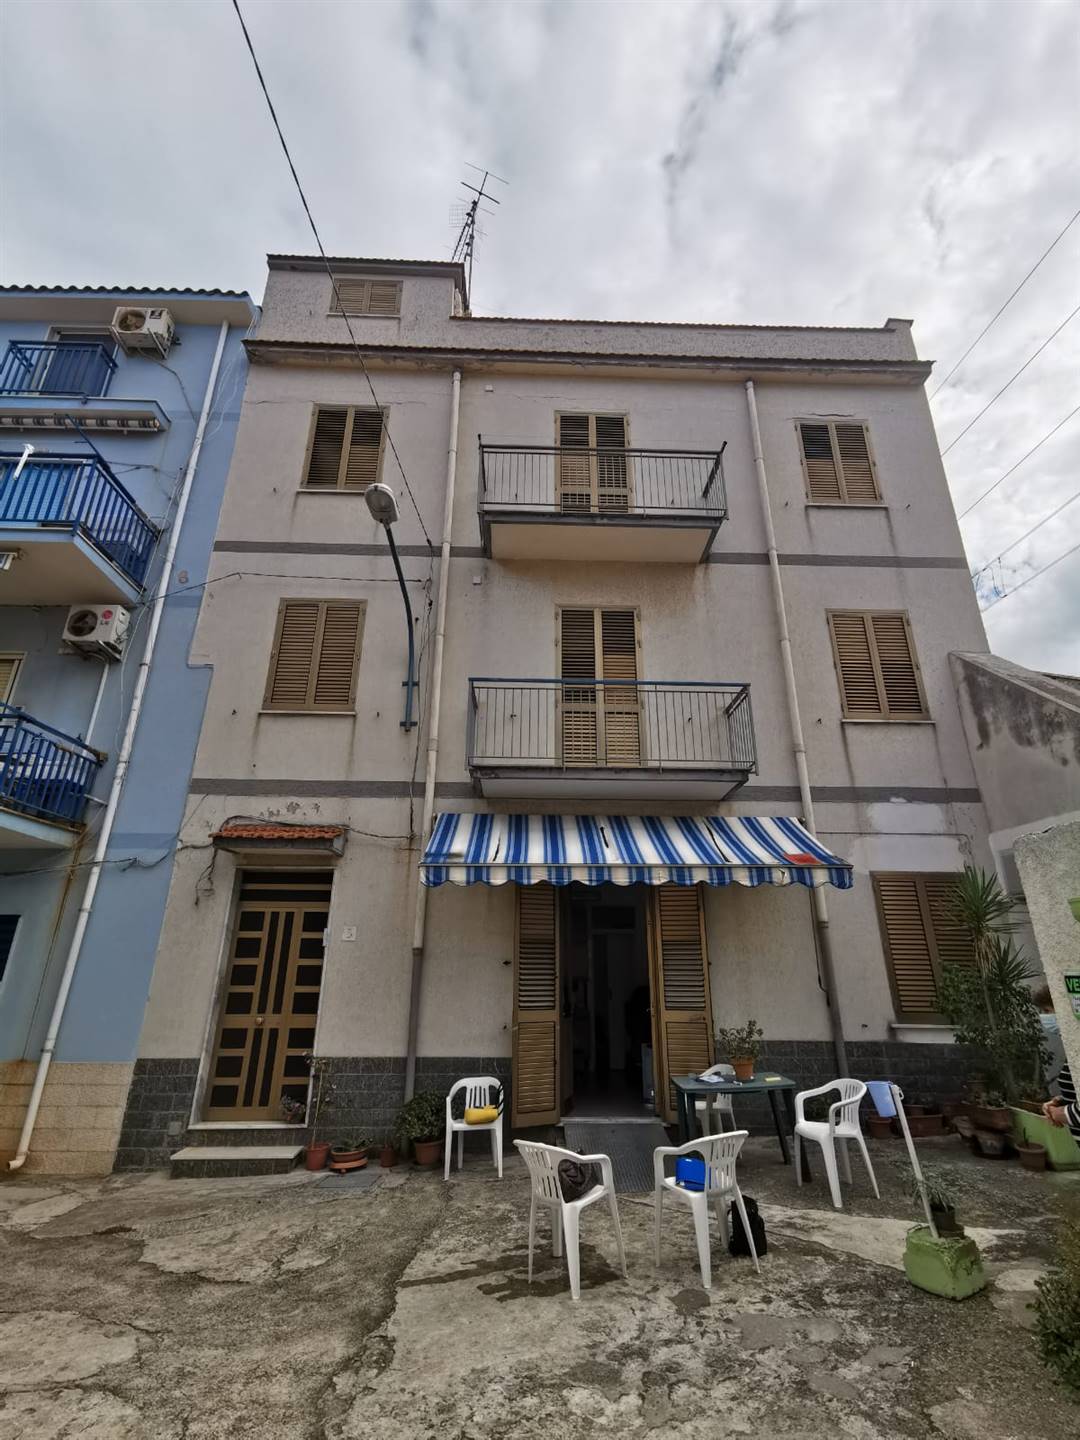 Palazzo / Stabile in vendita a Sant'Agata di Militello, 6 locali, prezzo € 120.000 | PortaleAgenzieImmobiliari.it